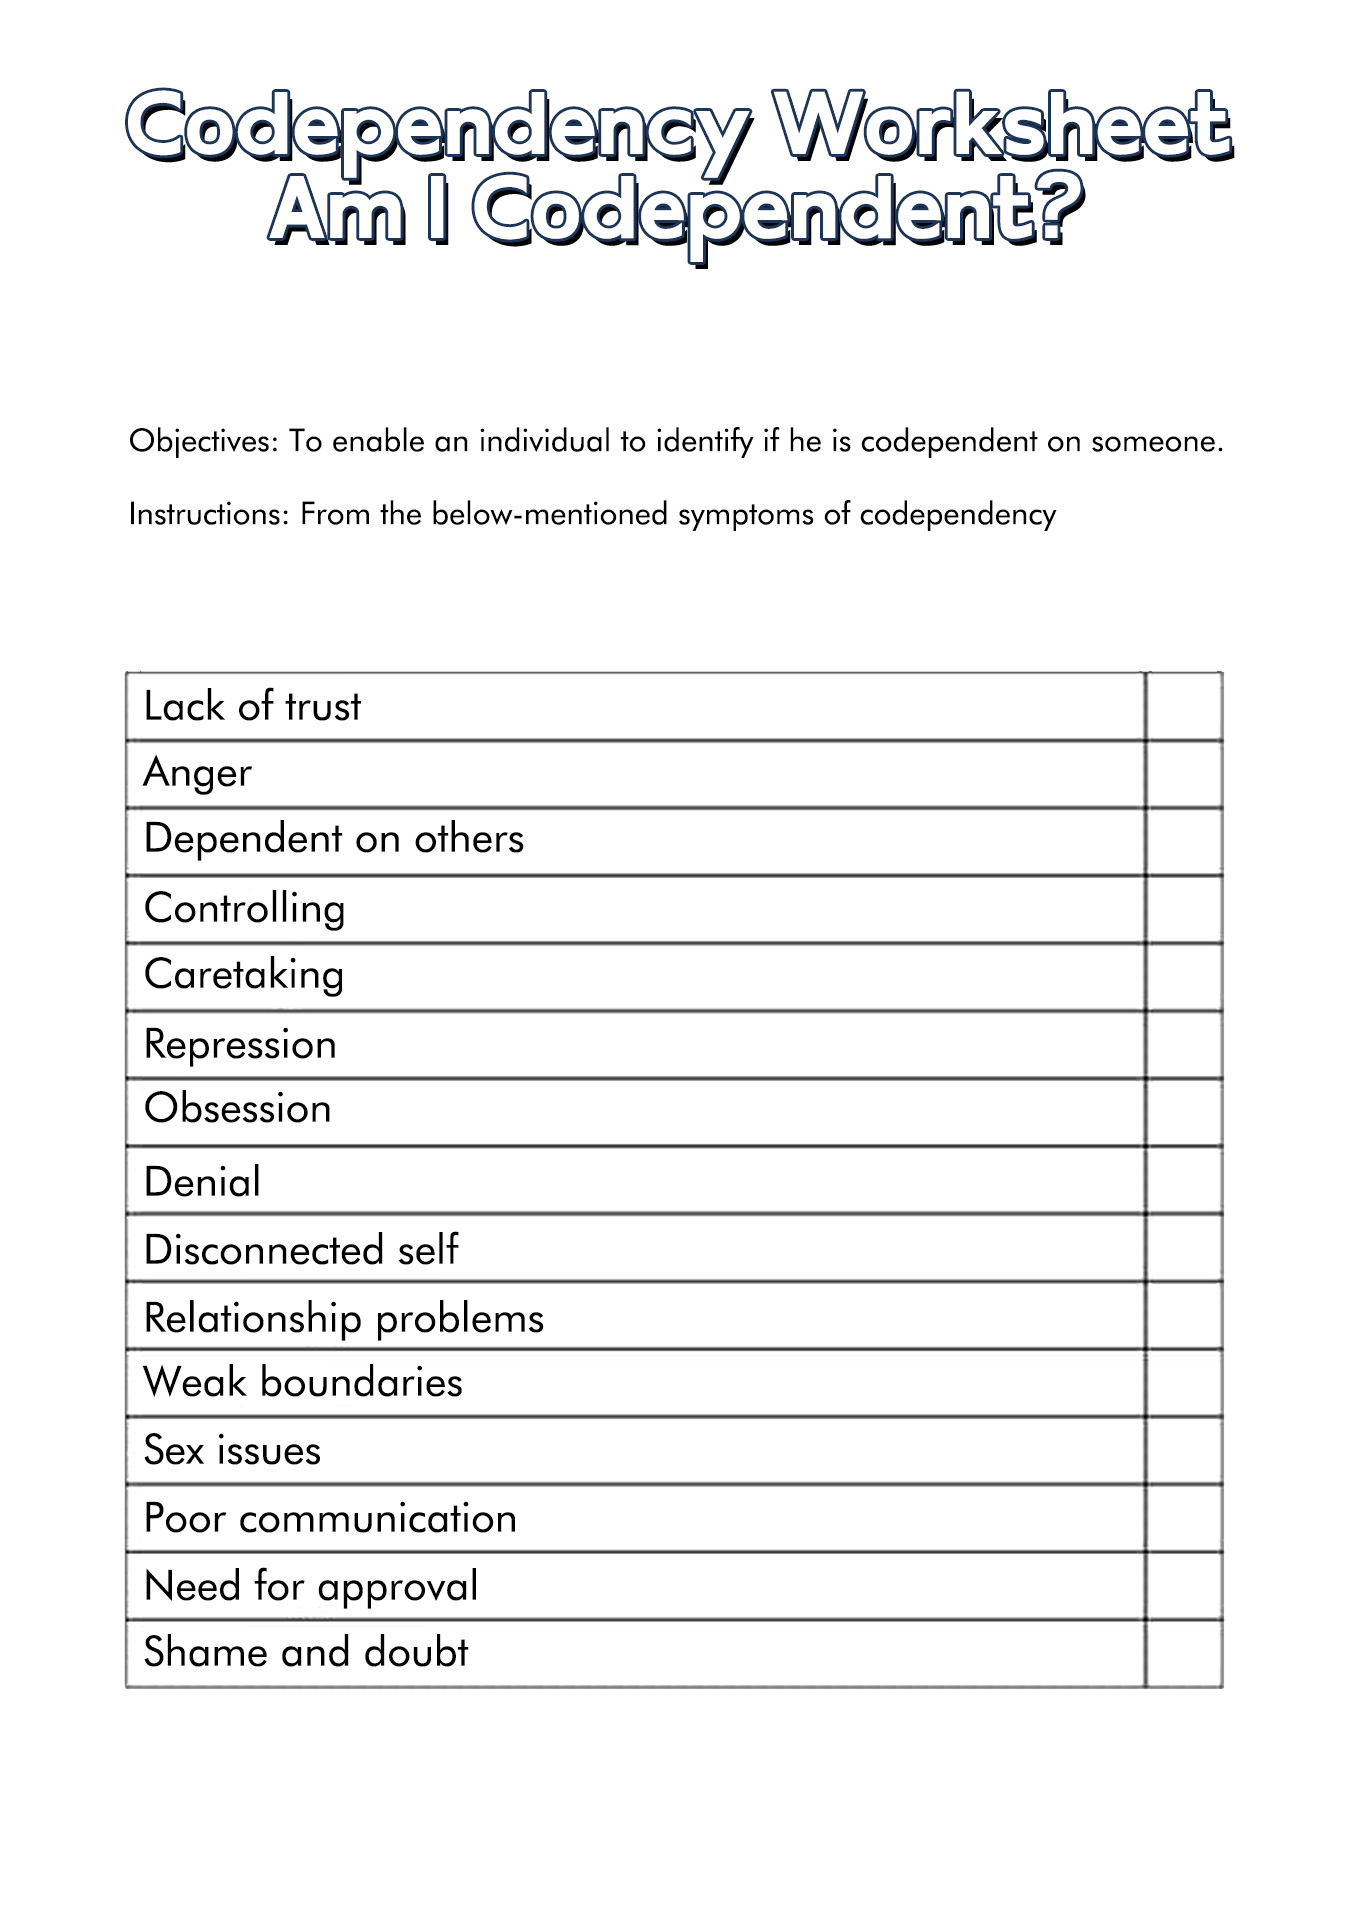 Codependency 12 Step Worksheets Image